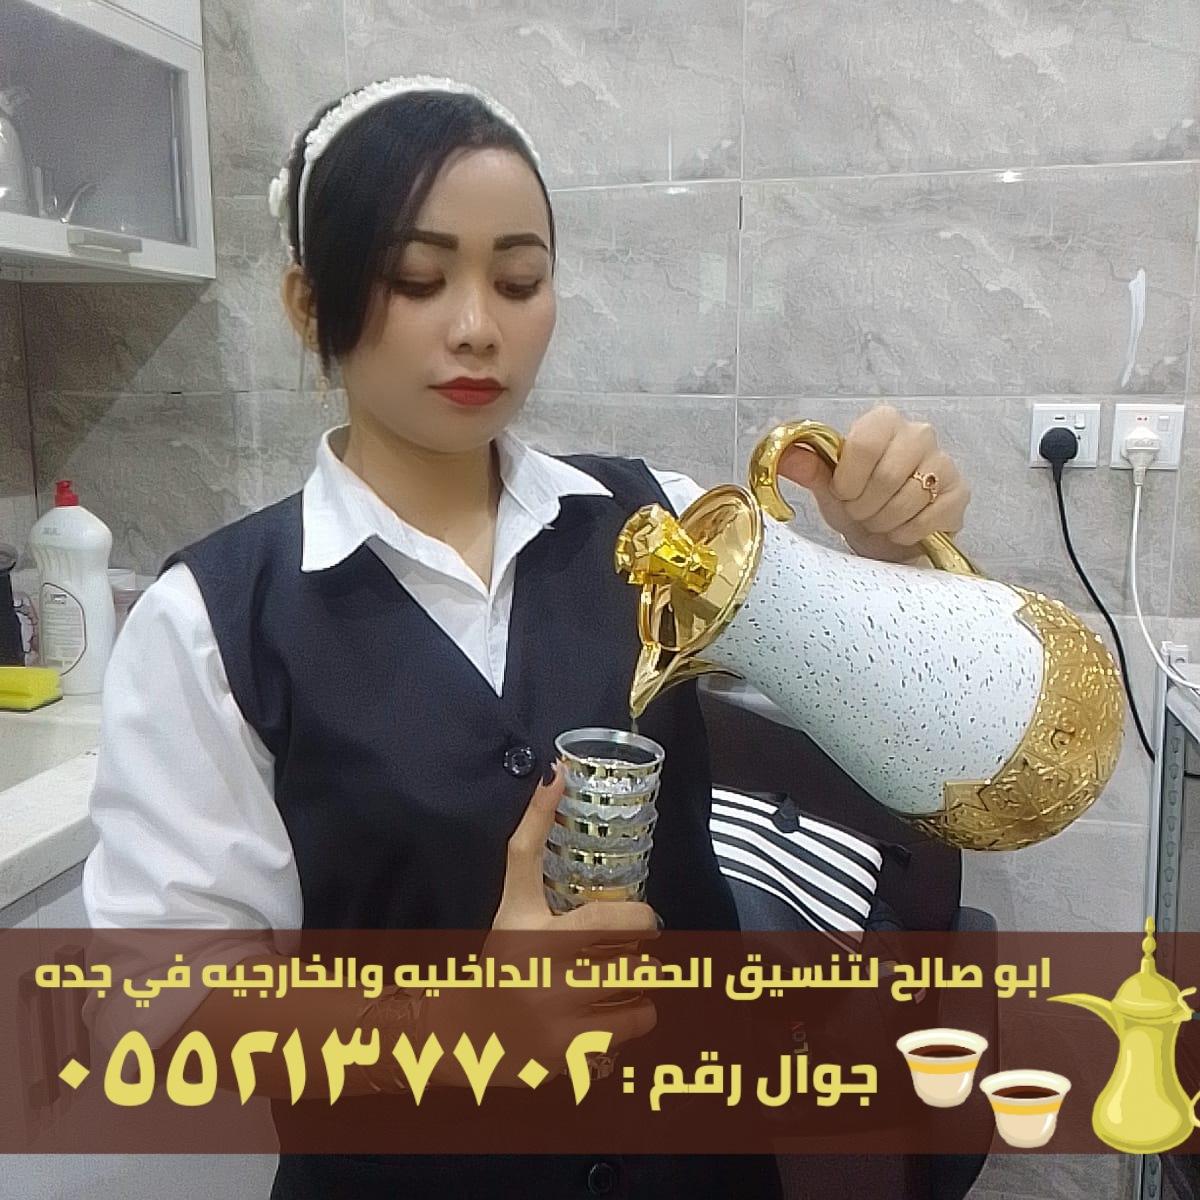 صبابين قهوه قهوجيات في جدة,0552137702 960203248